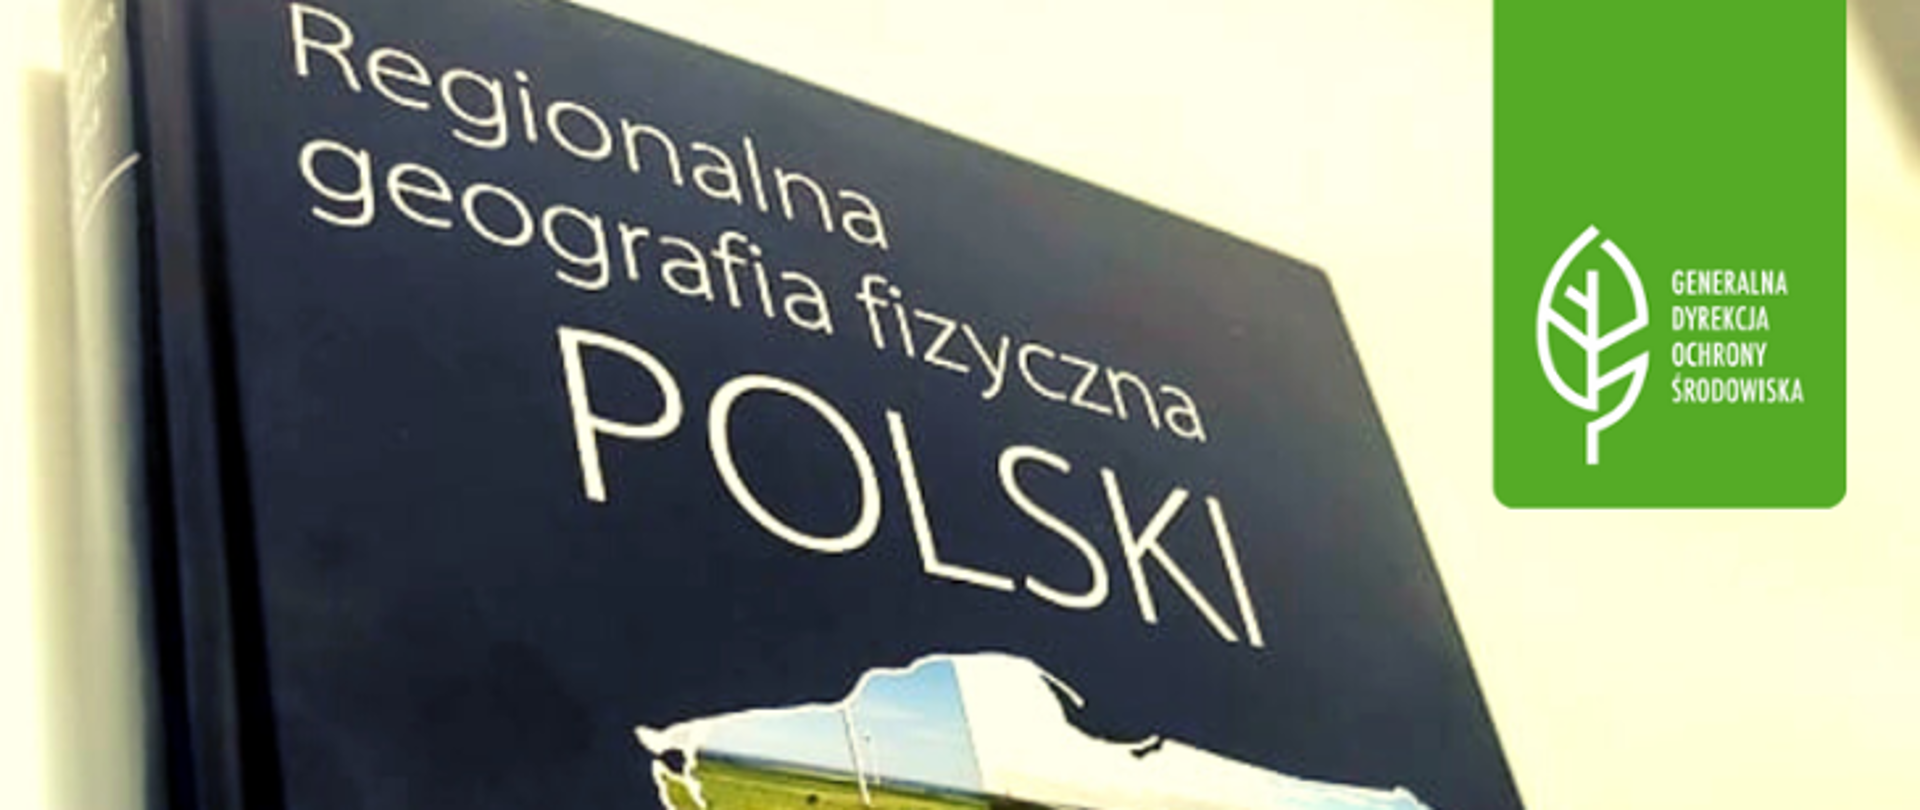 Regionalna geografia fizyczna Polski